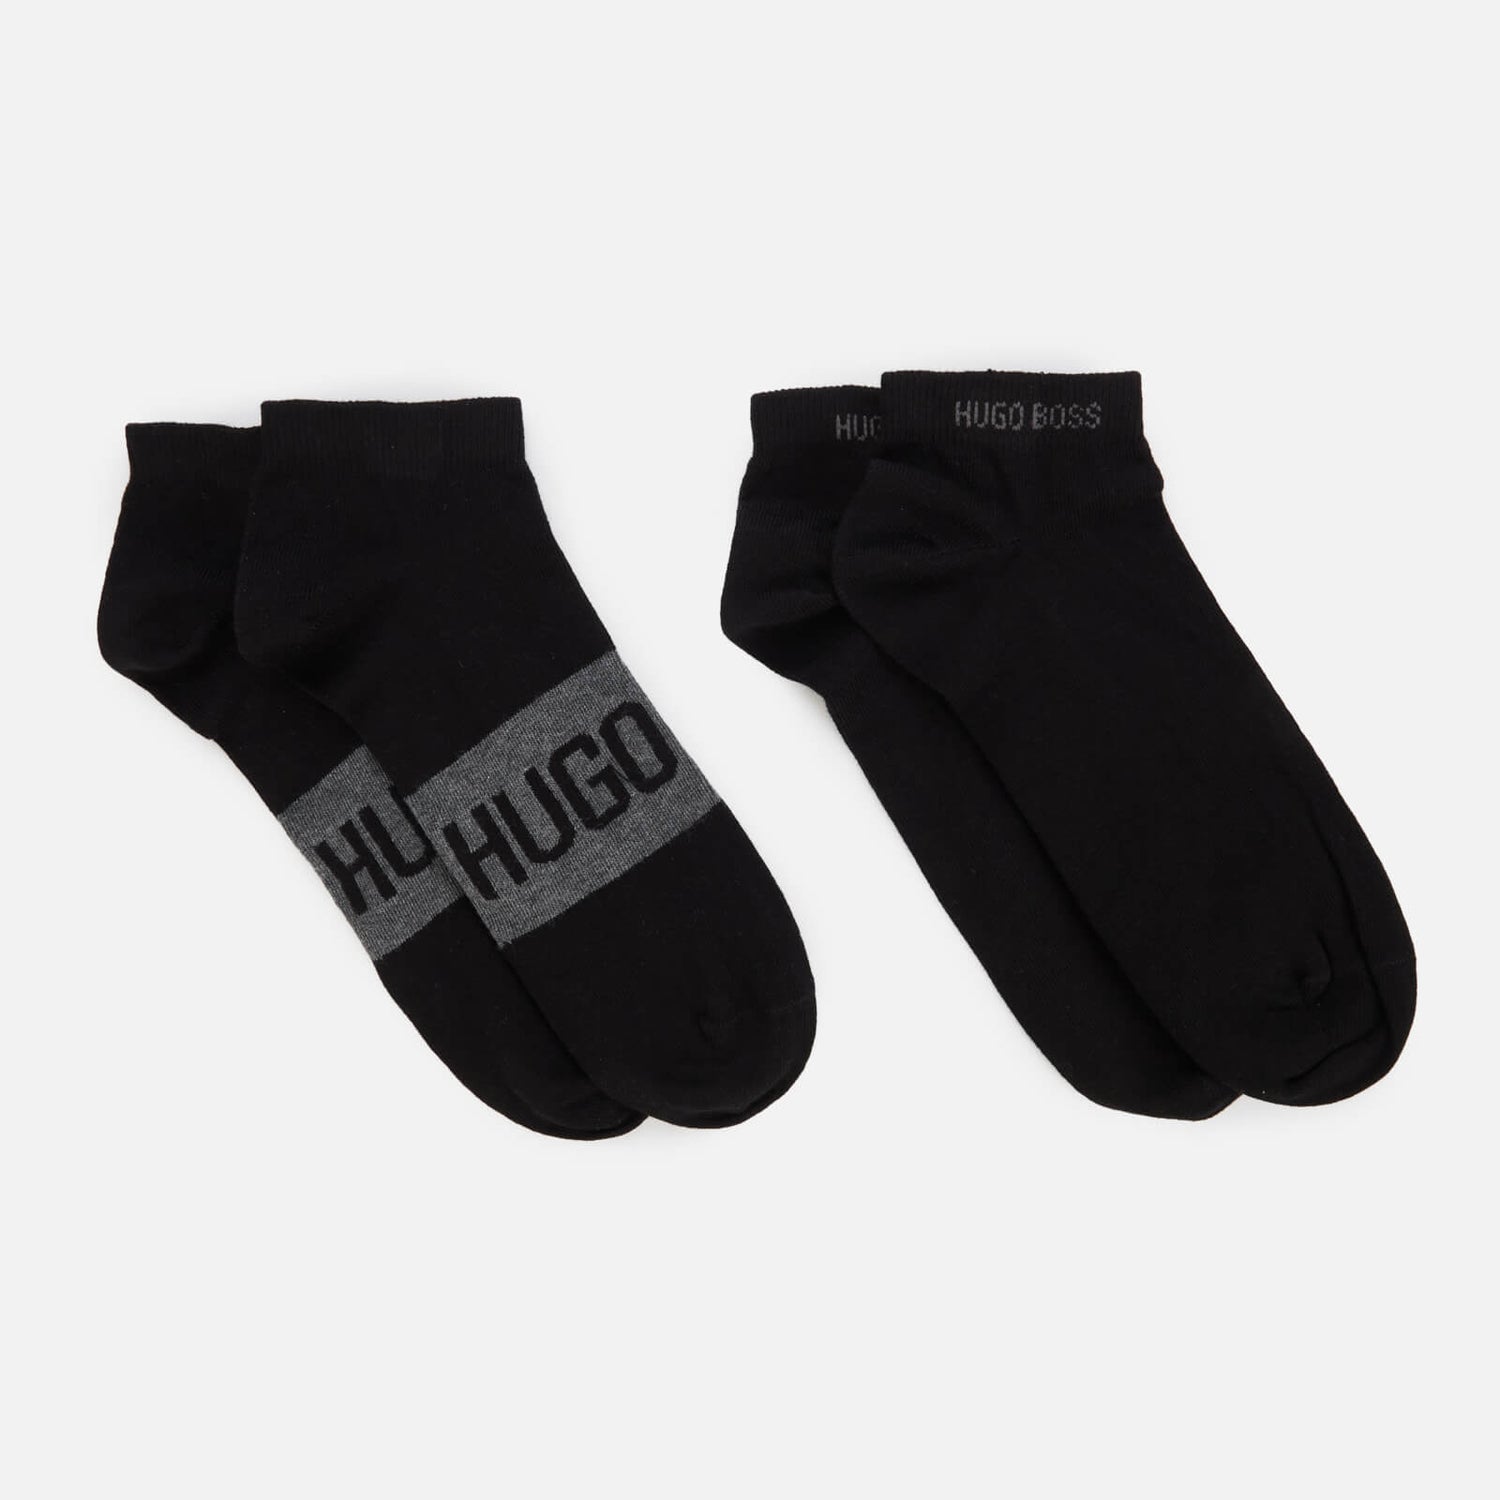 BOSS Bodywear Men's 2-Pack Ankle Socks - Black